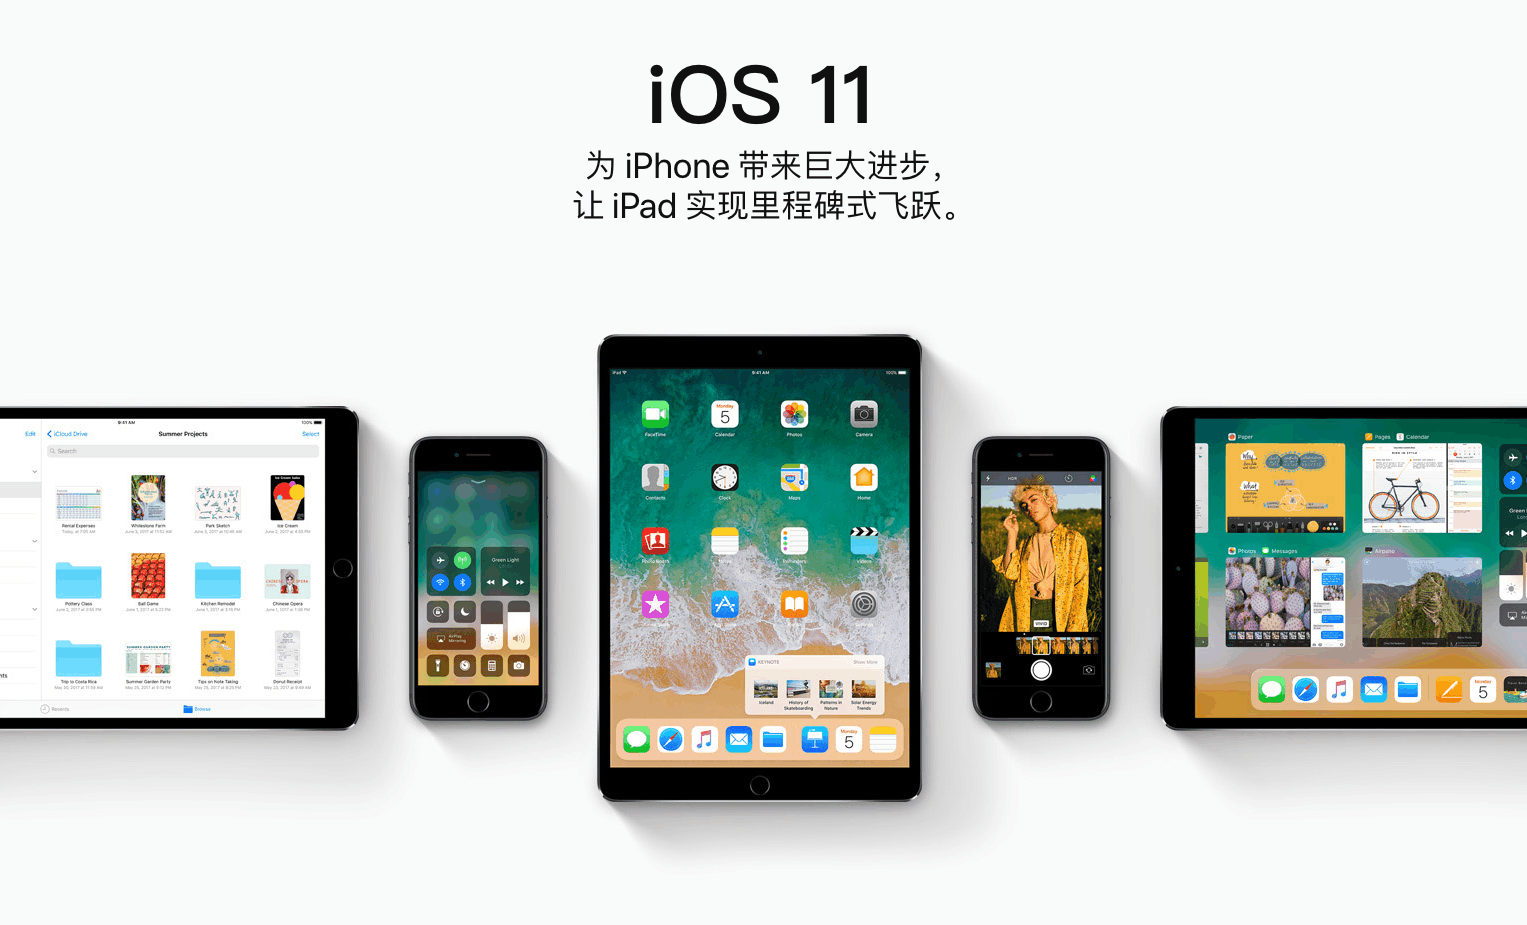 iPhone 5总算撤出历史的舞台！iOS 10.3.3最新版本公布